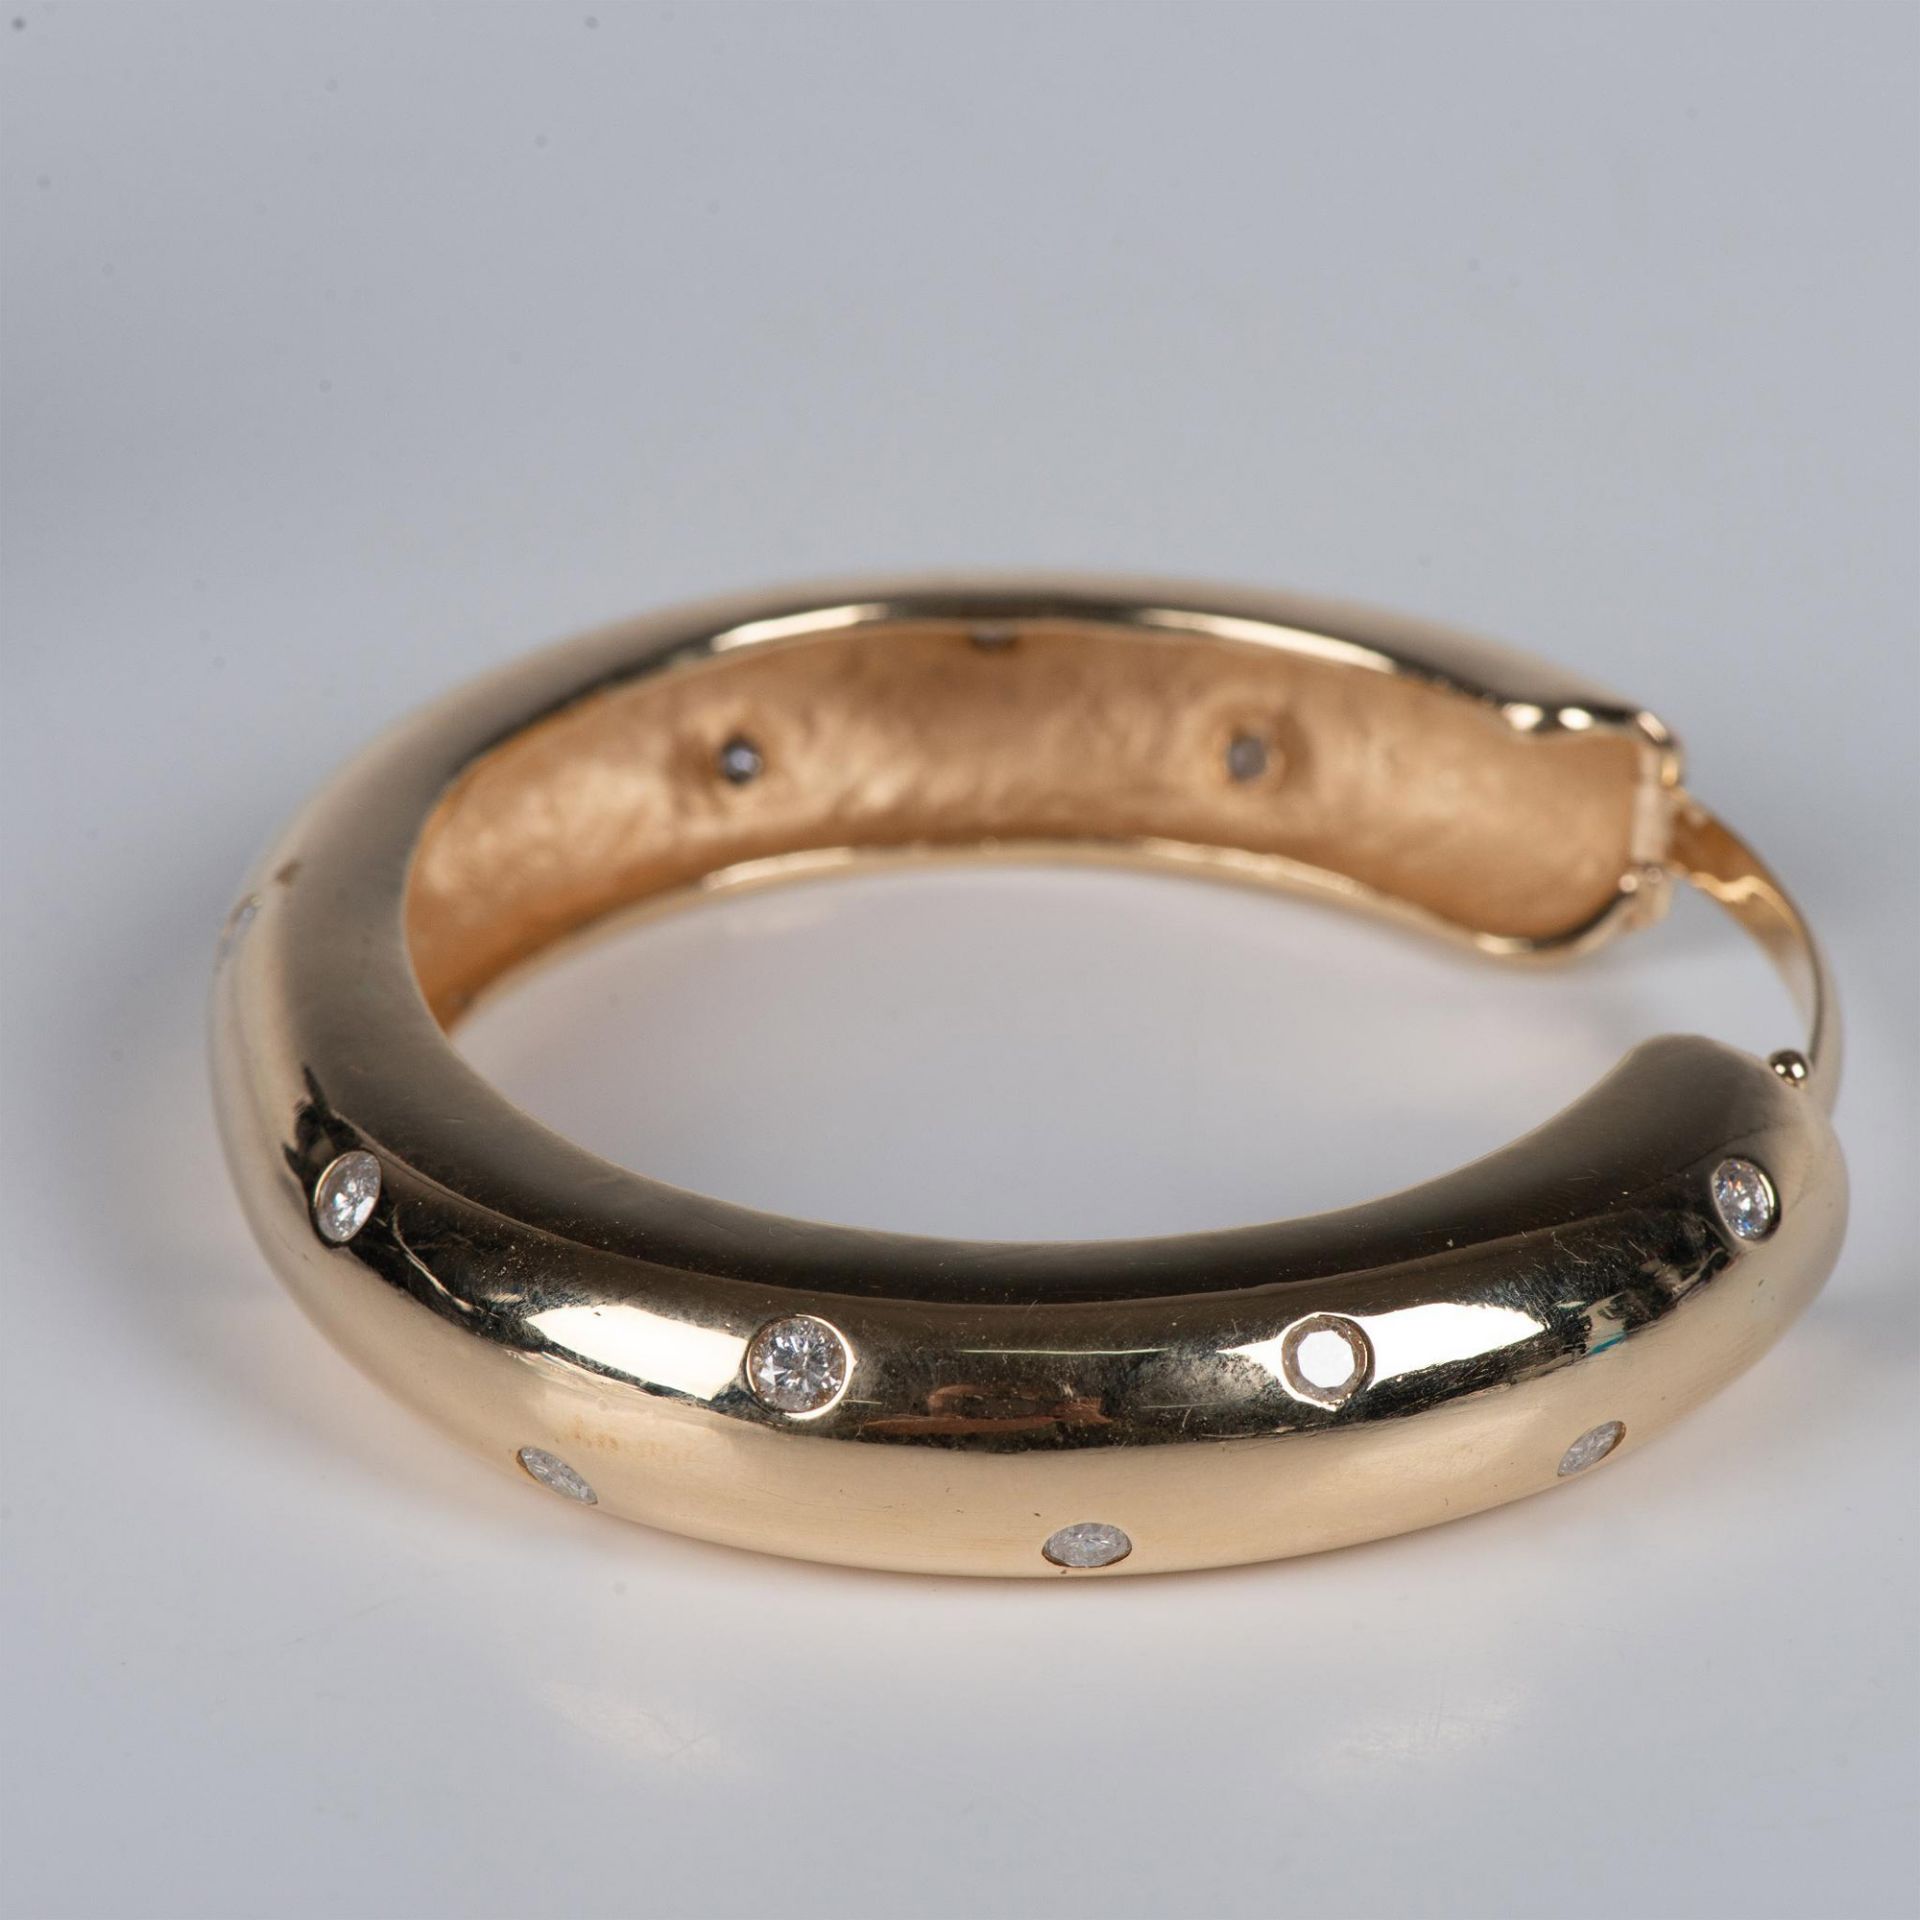 Large 14K Gold & Diamond Bangle Bracelet - Image 2 of 4